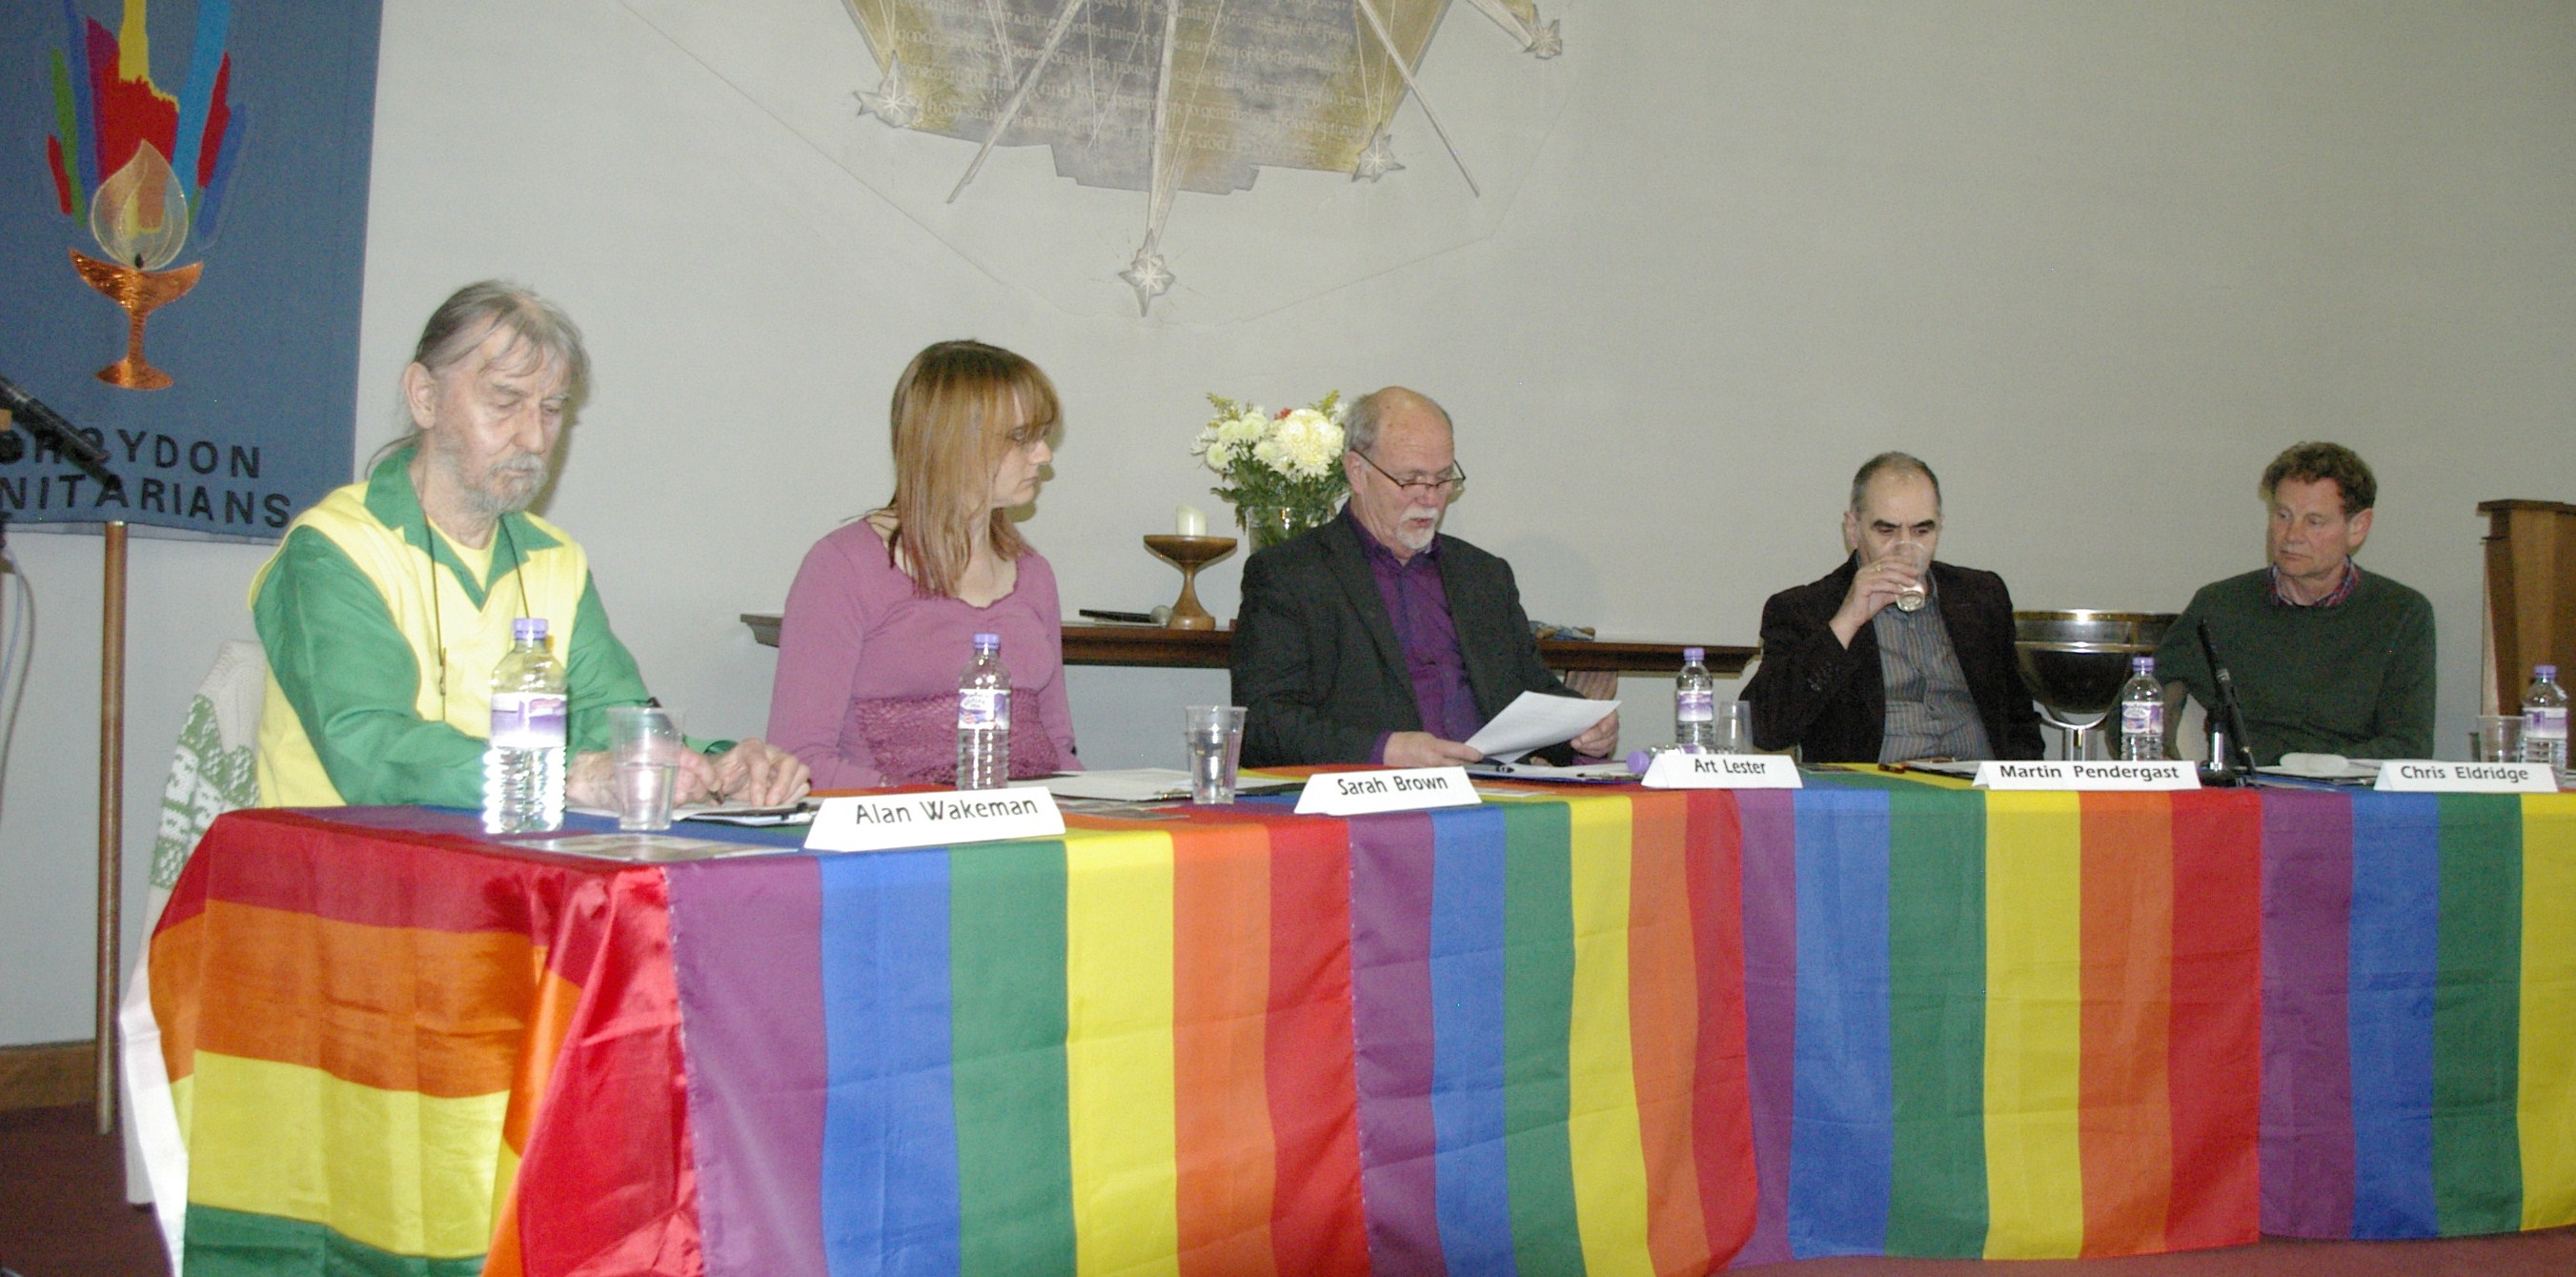 The panel for the debate. Left to right: Alan Wakeman, Sarah Brown, Rev Art Lester, Martin Pendergast, Chris Eldridge